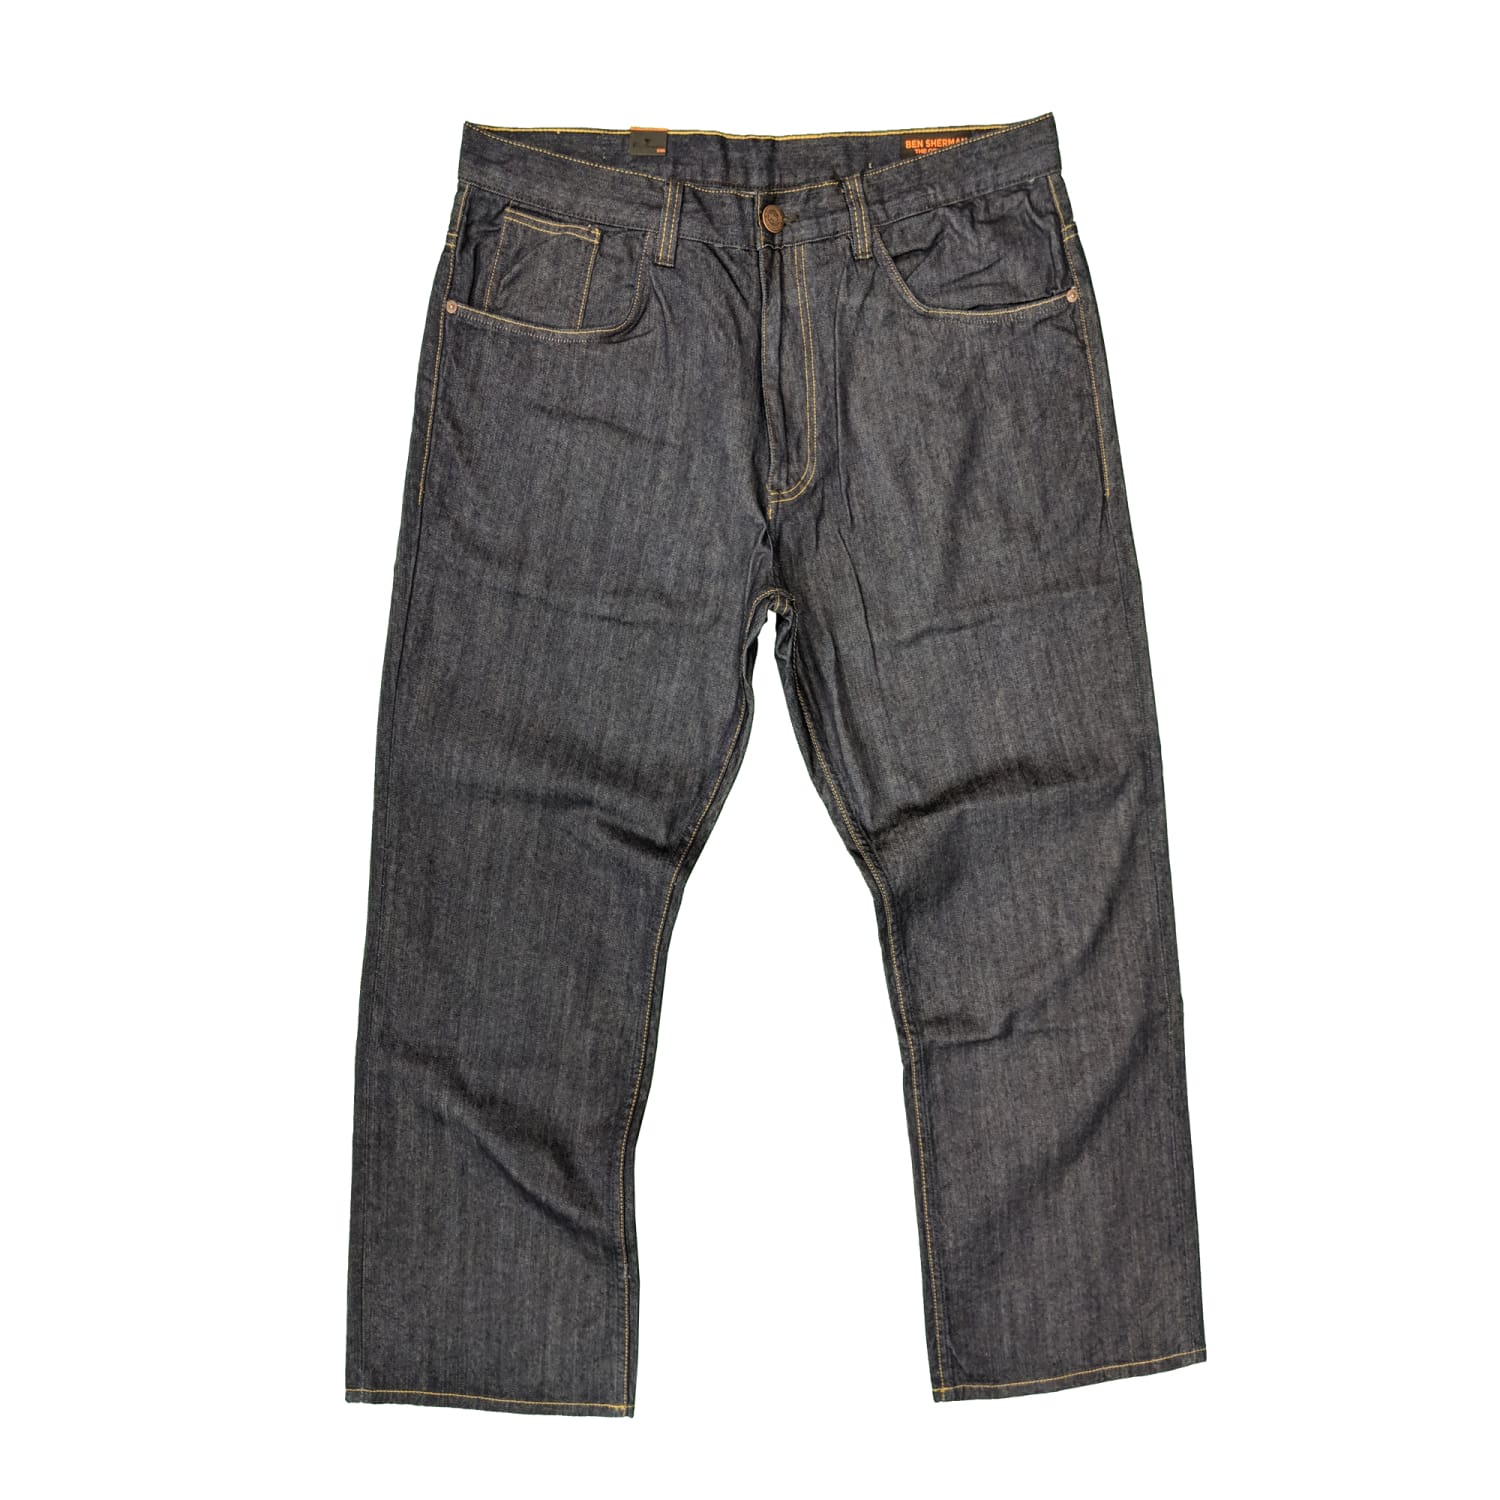 Ben Sherman Jeans - MG00054L - Indigo 1